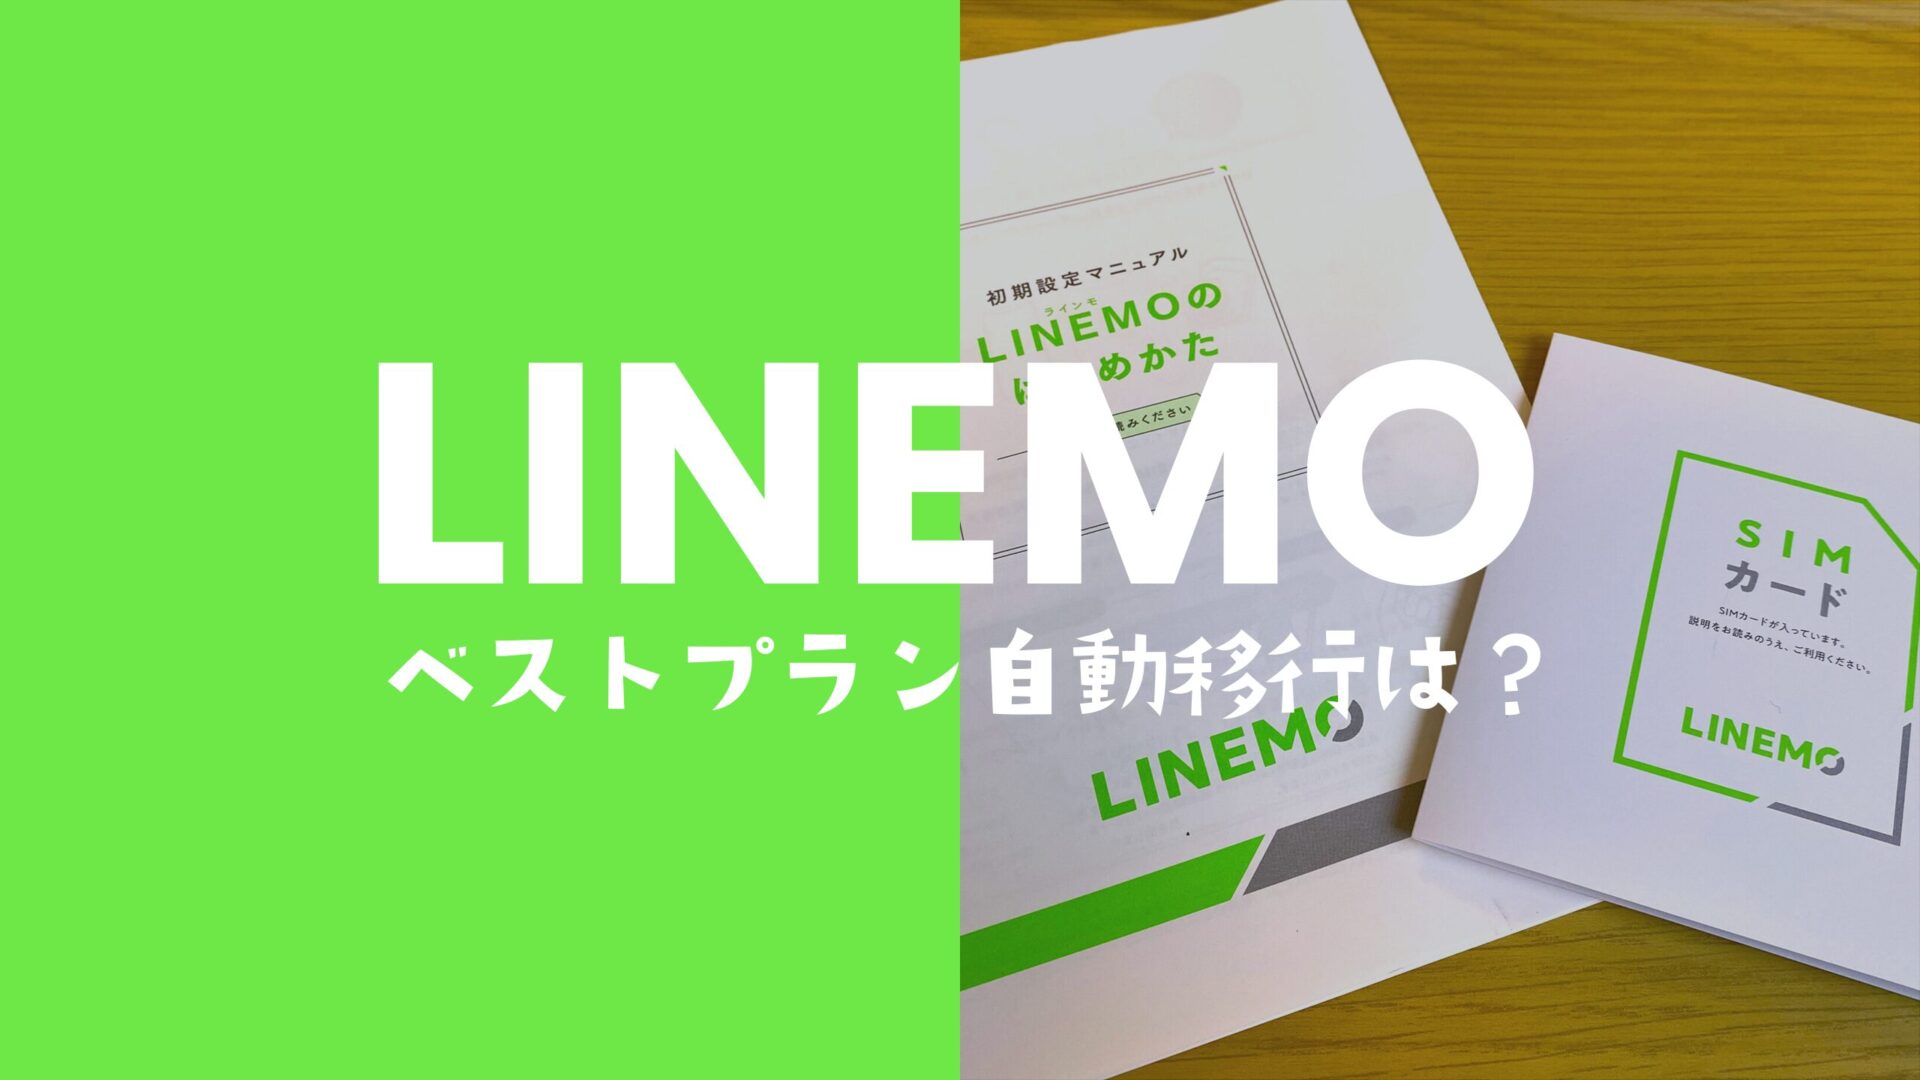 LINEMO(ラインモ)はベストプランへ自動移行してしまうのか解説。のサムネイル画像